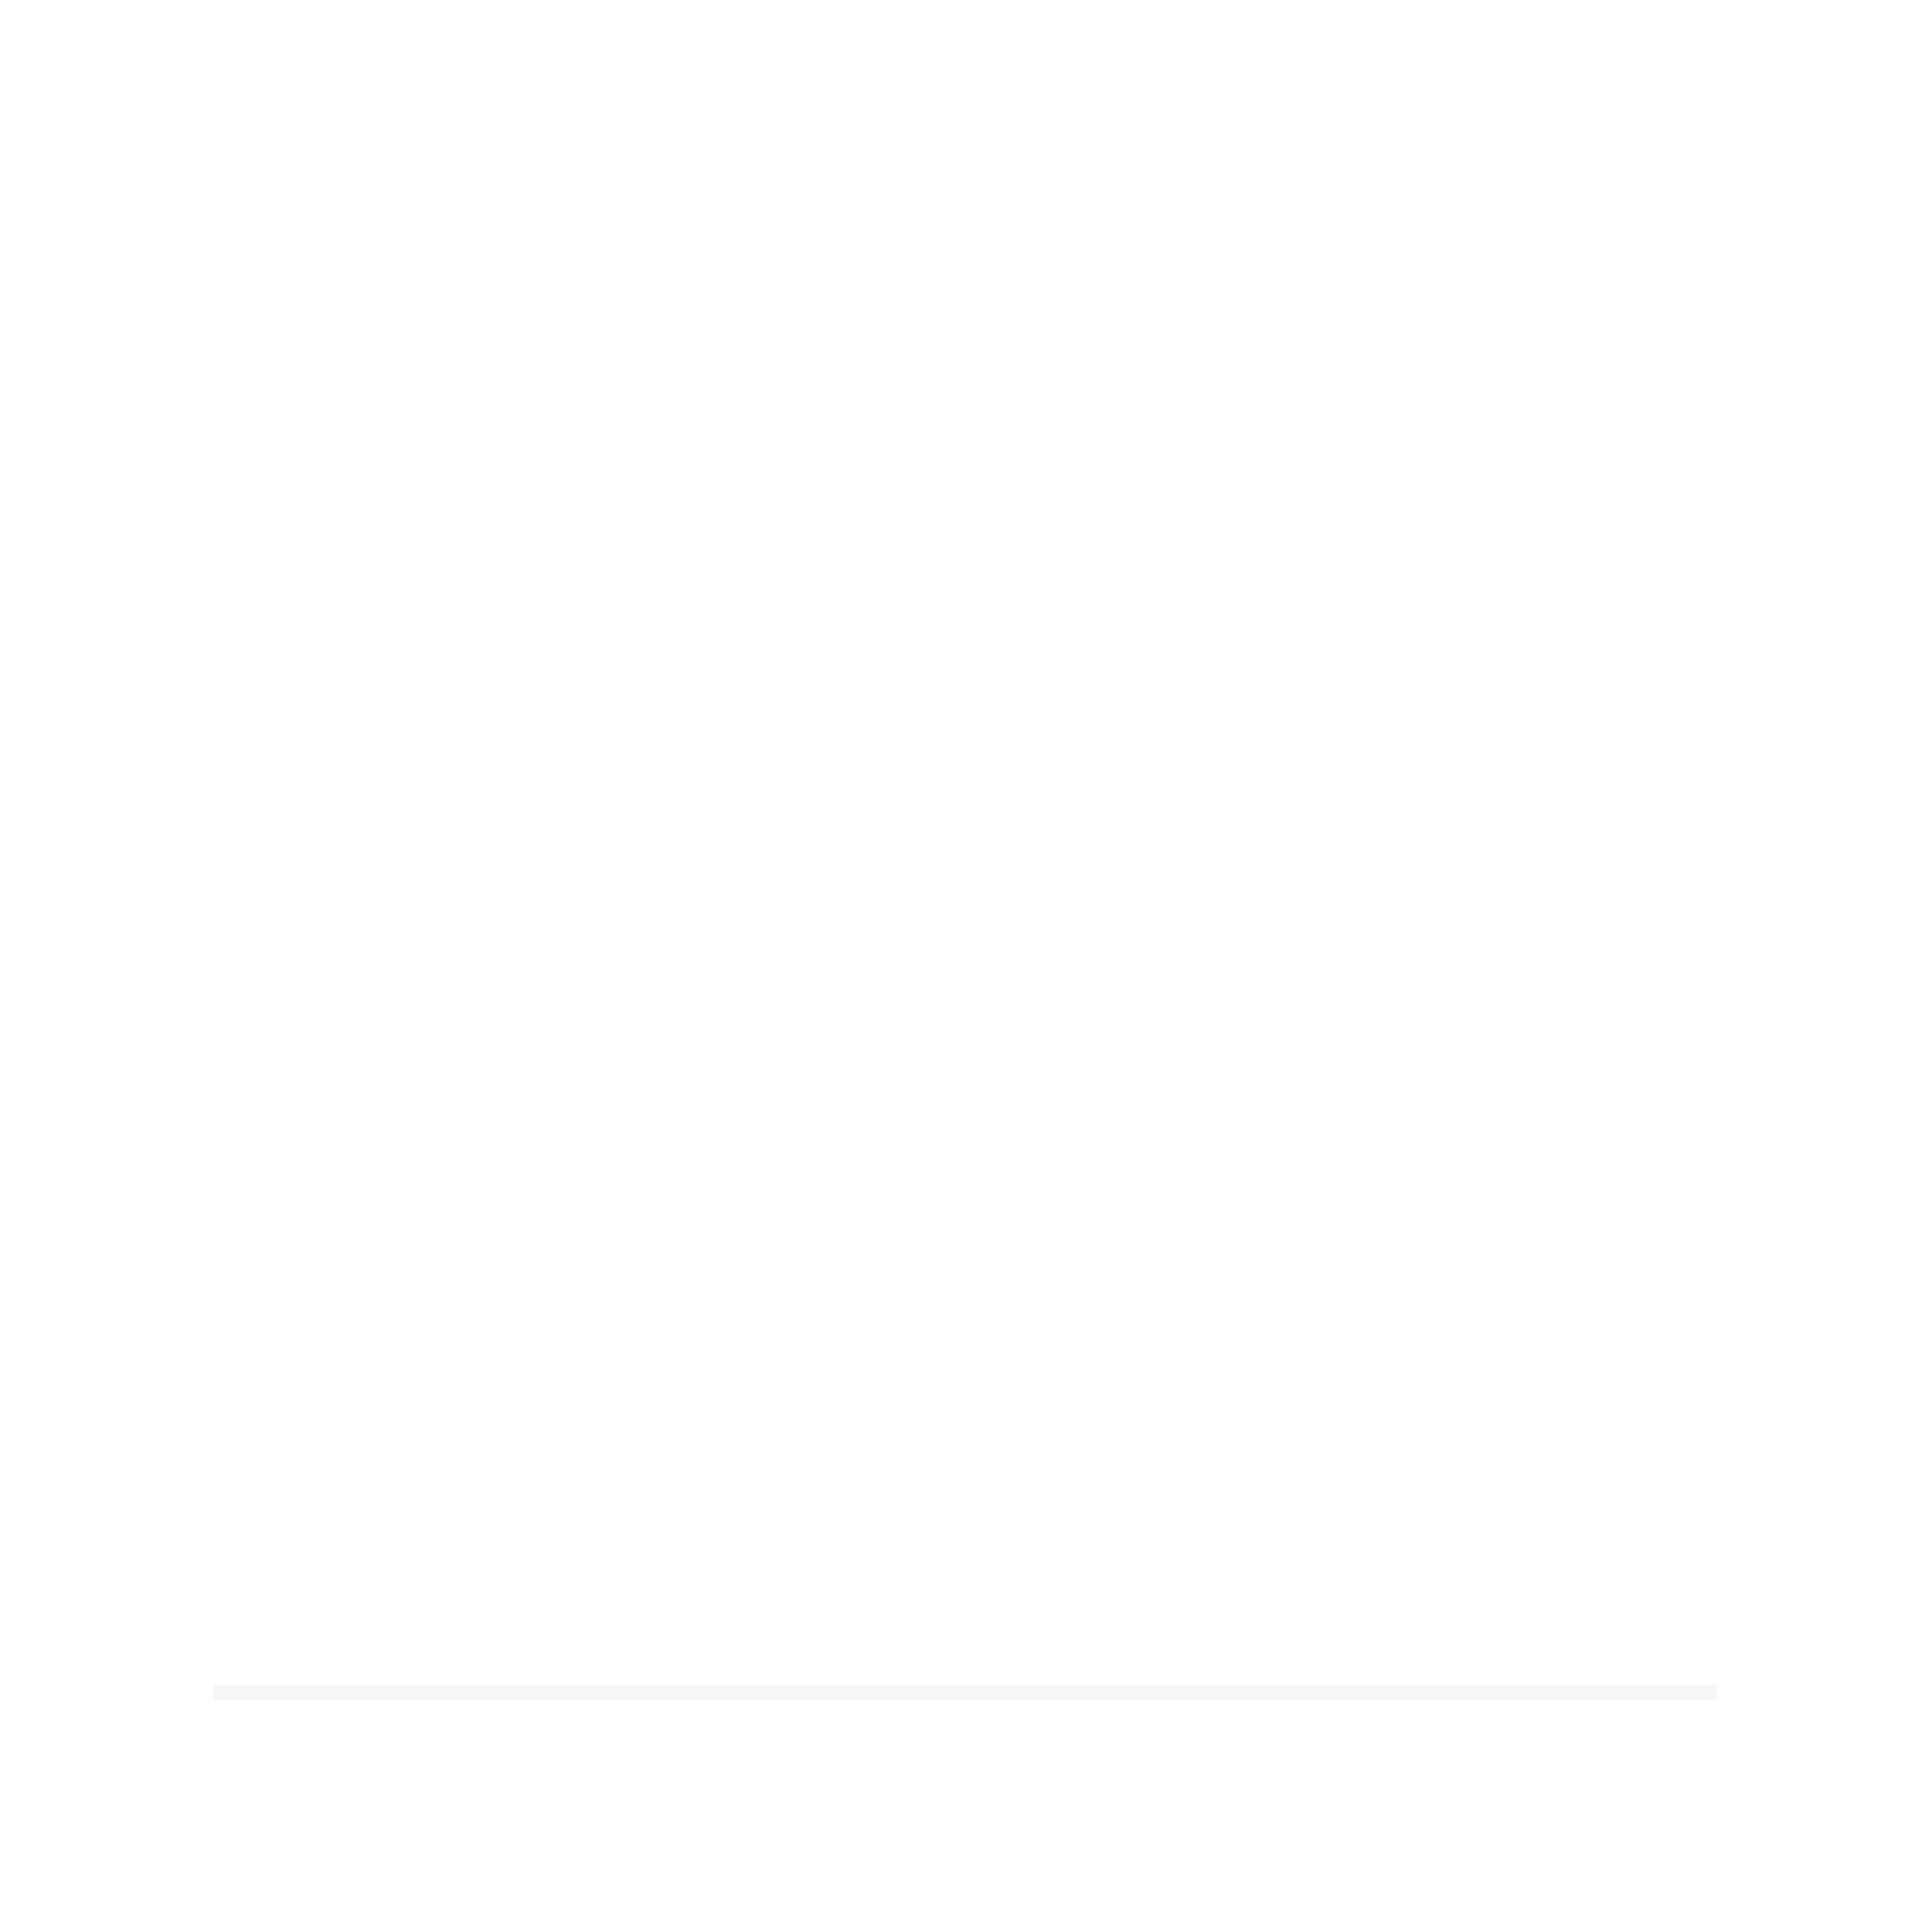 DerGoth digitals